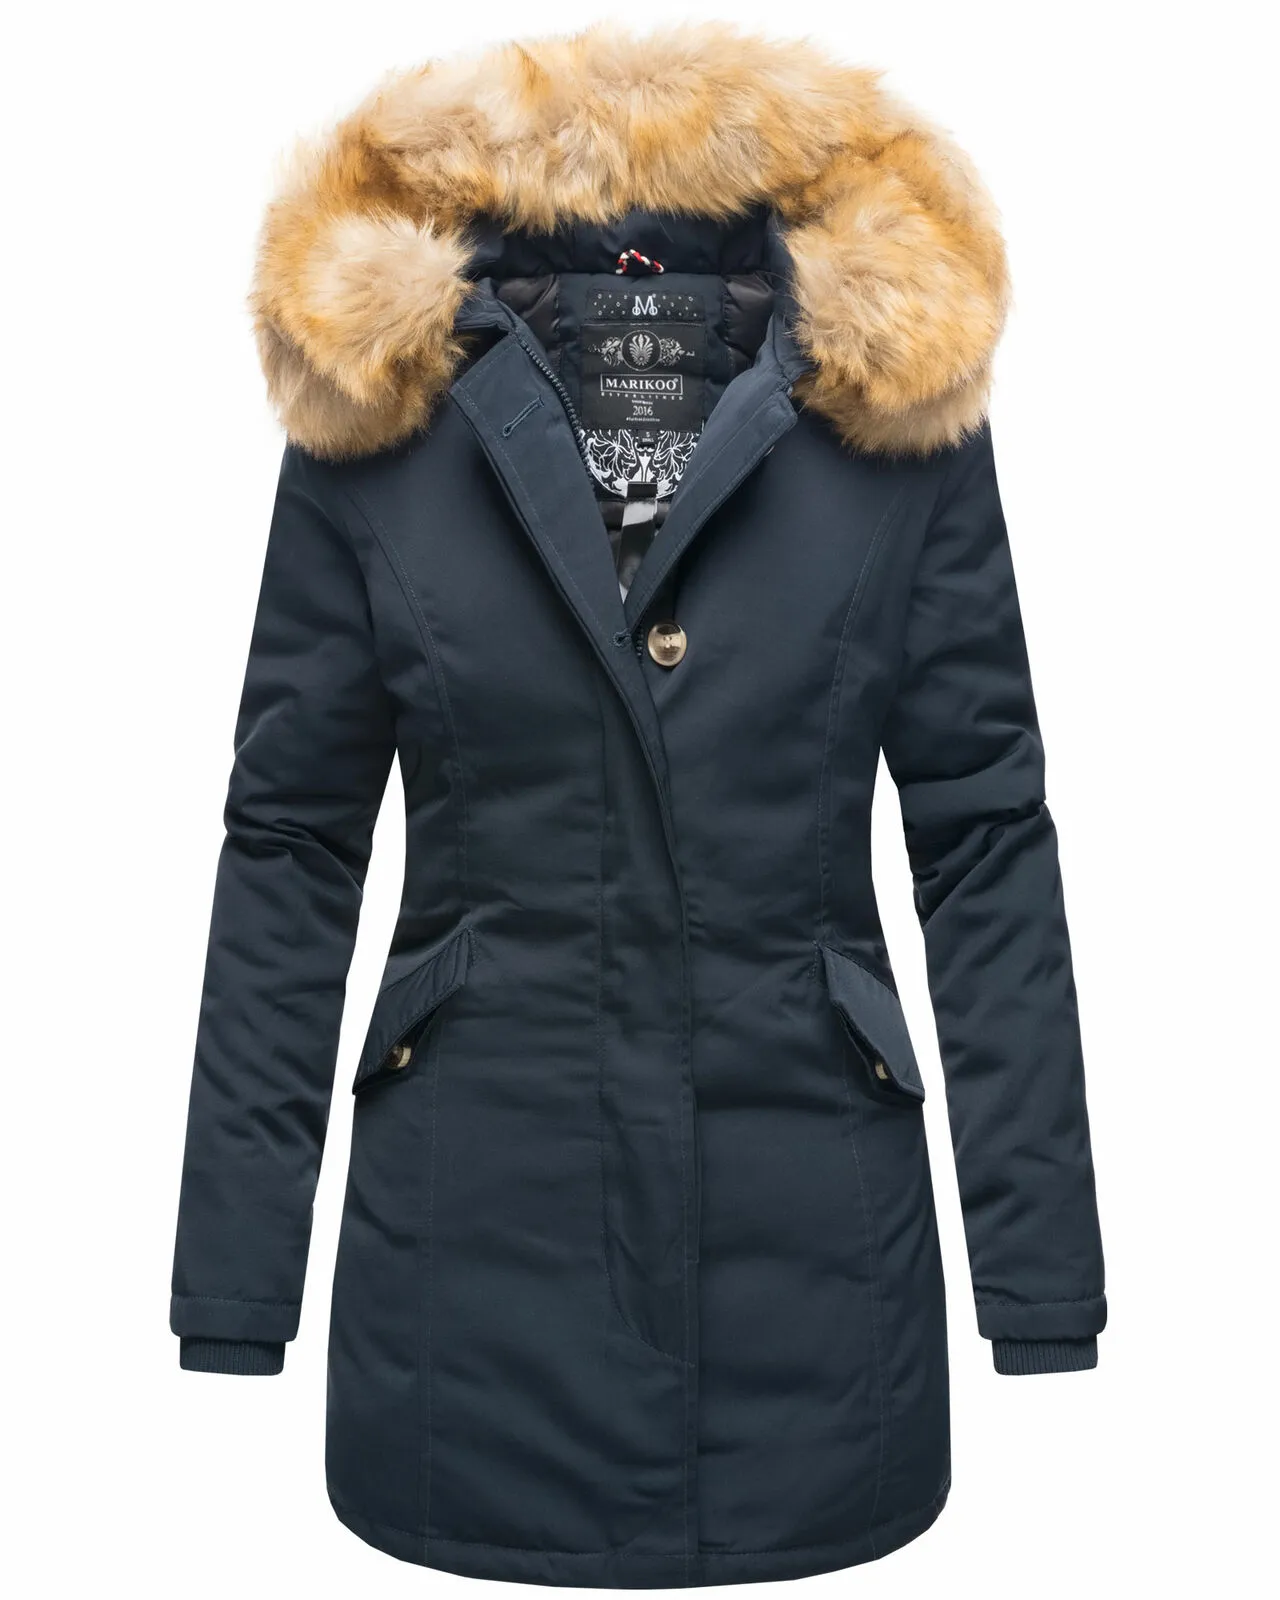 Ladies winter jacket coat coat winter jacket warm lining D